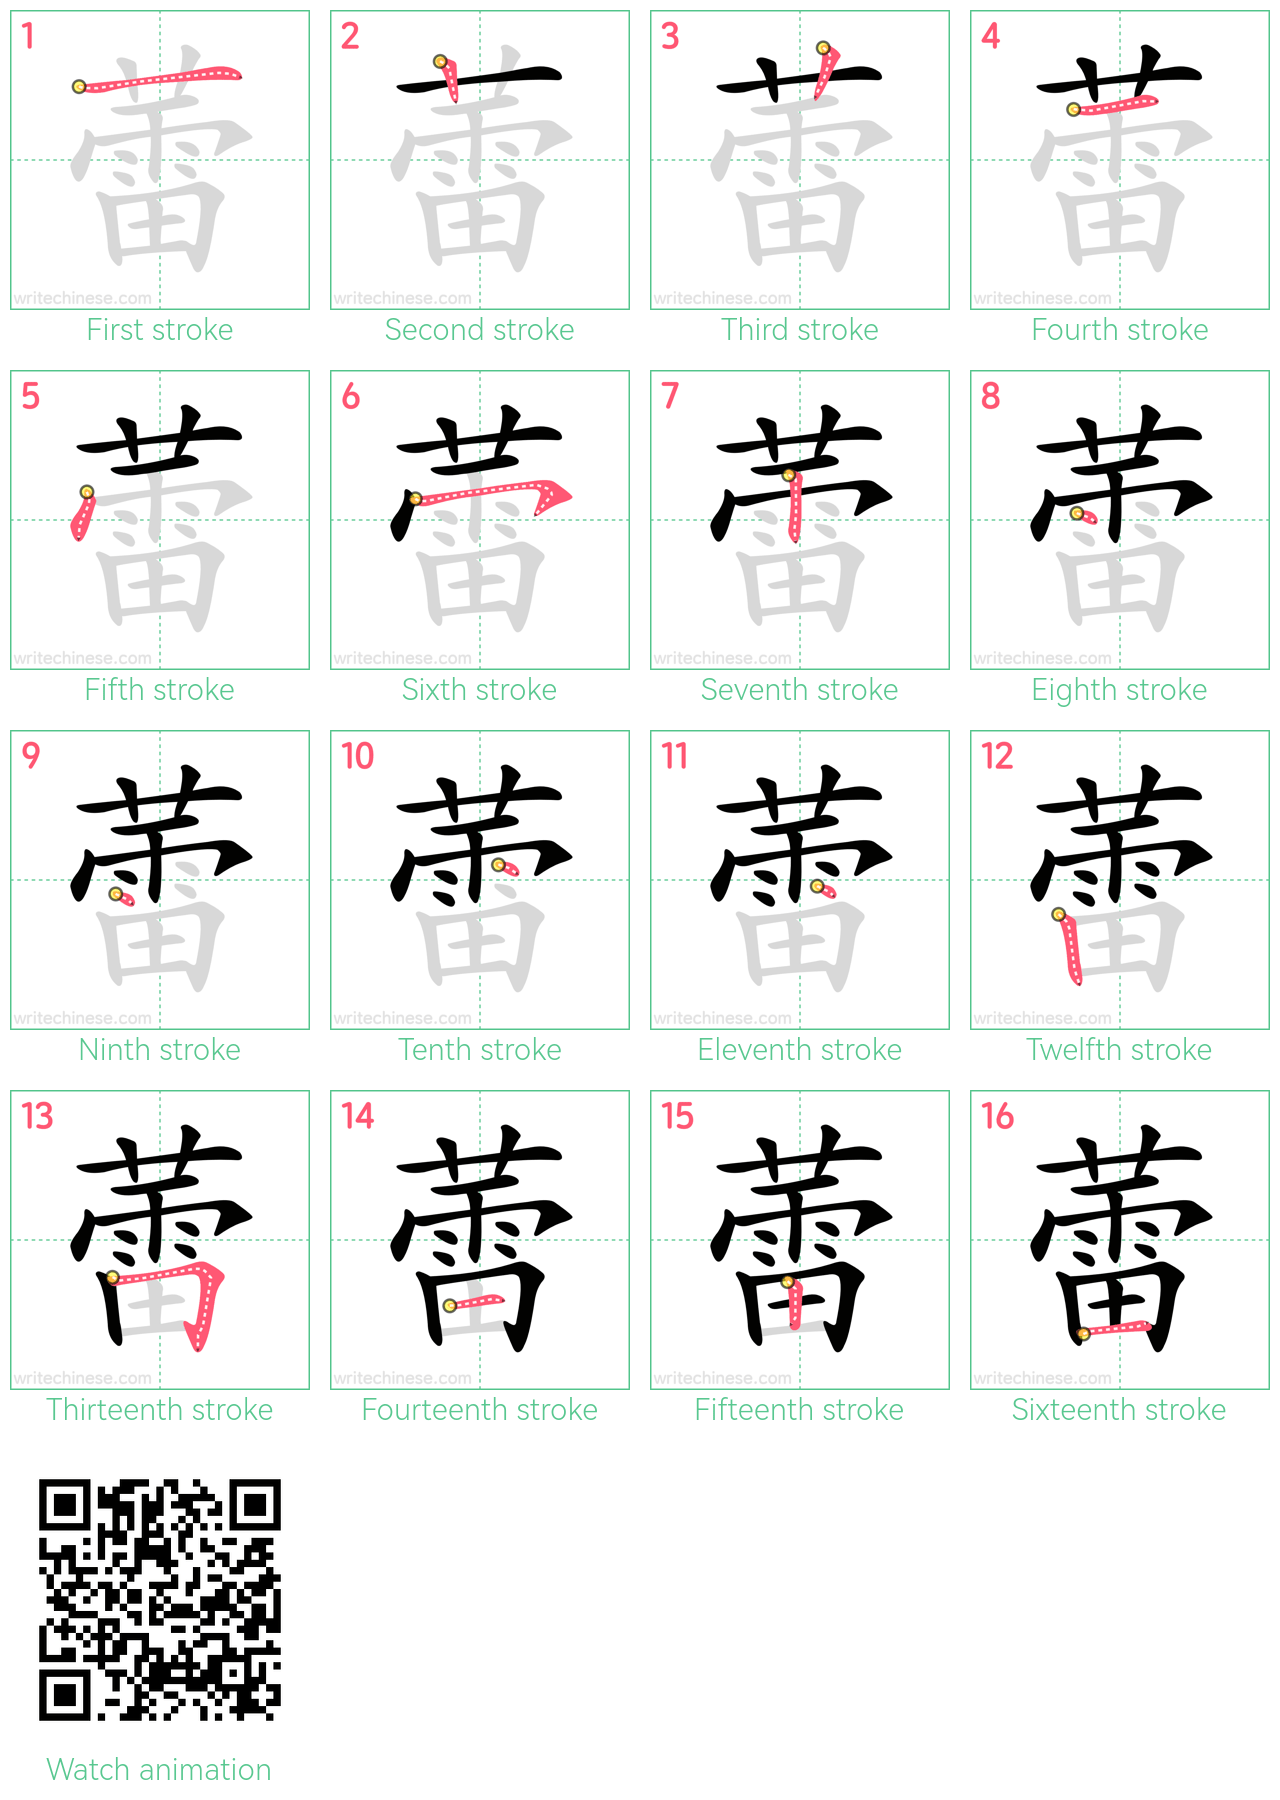 蕾 step-by-step stroke order diagrams